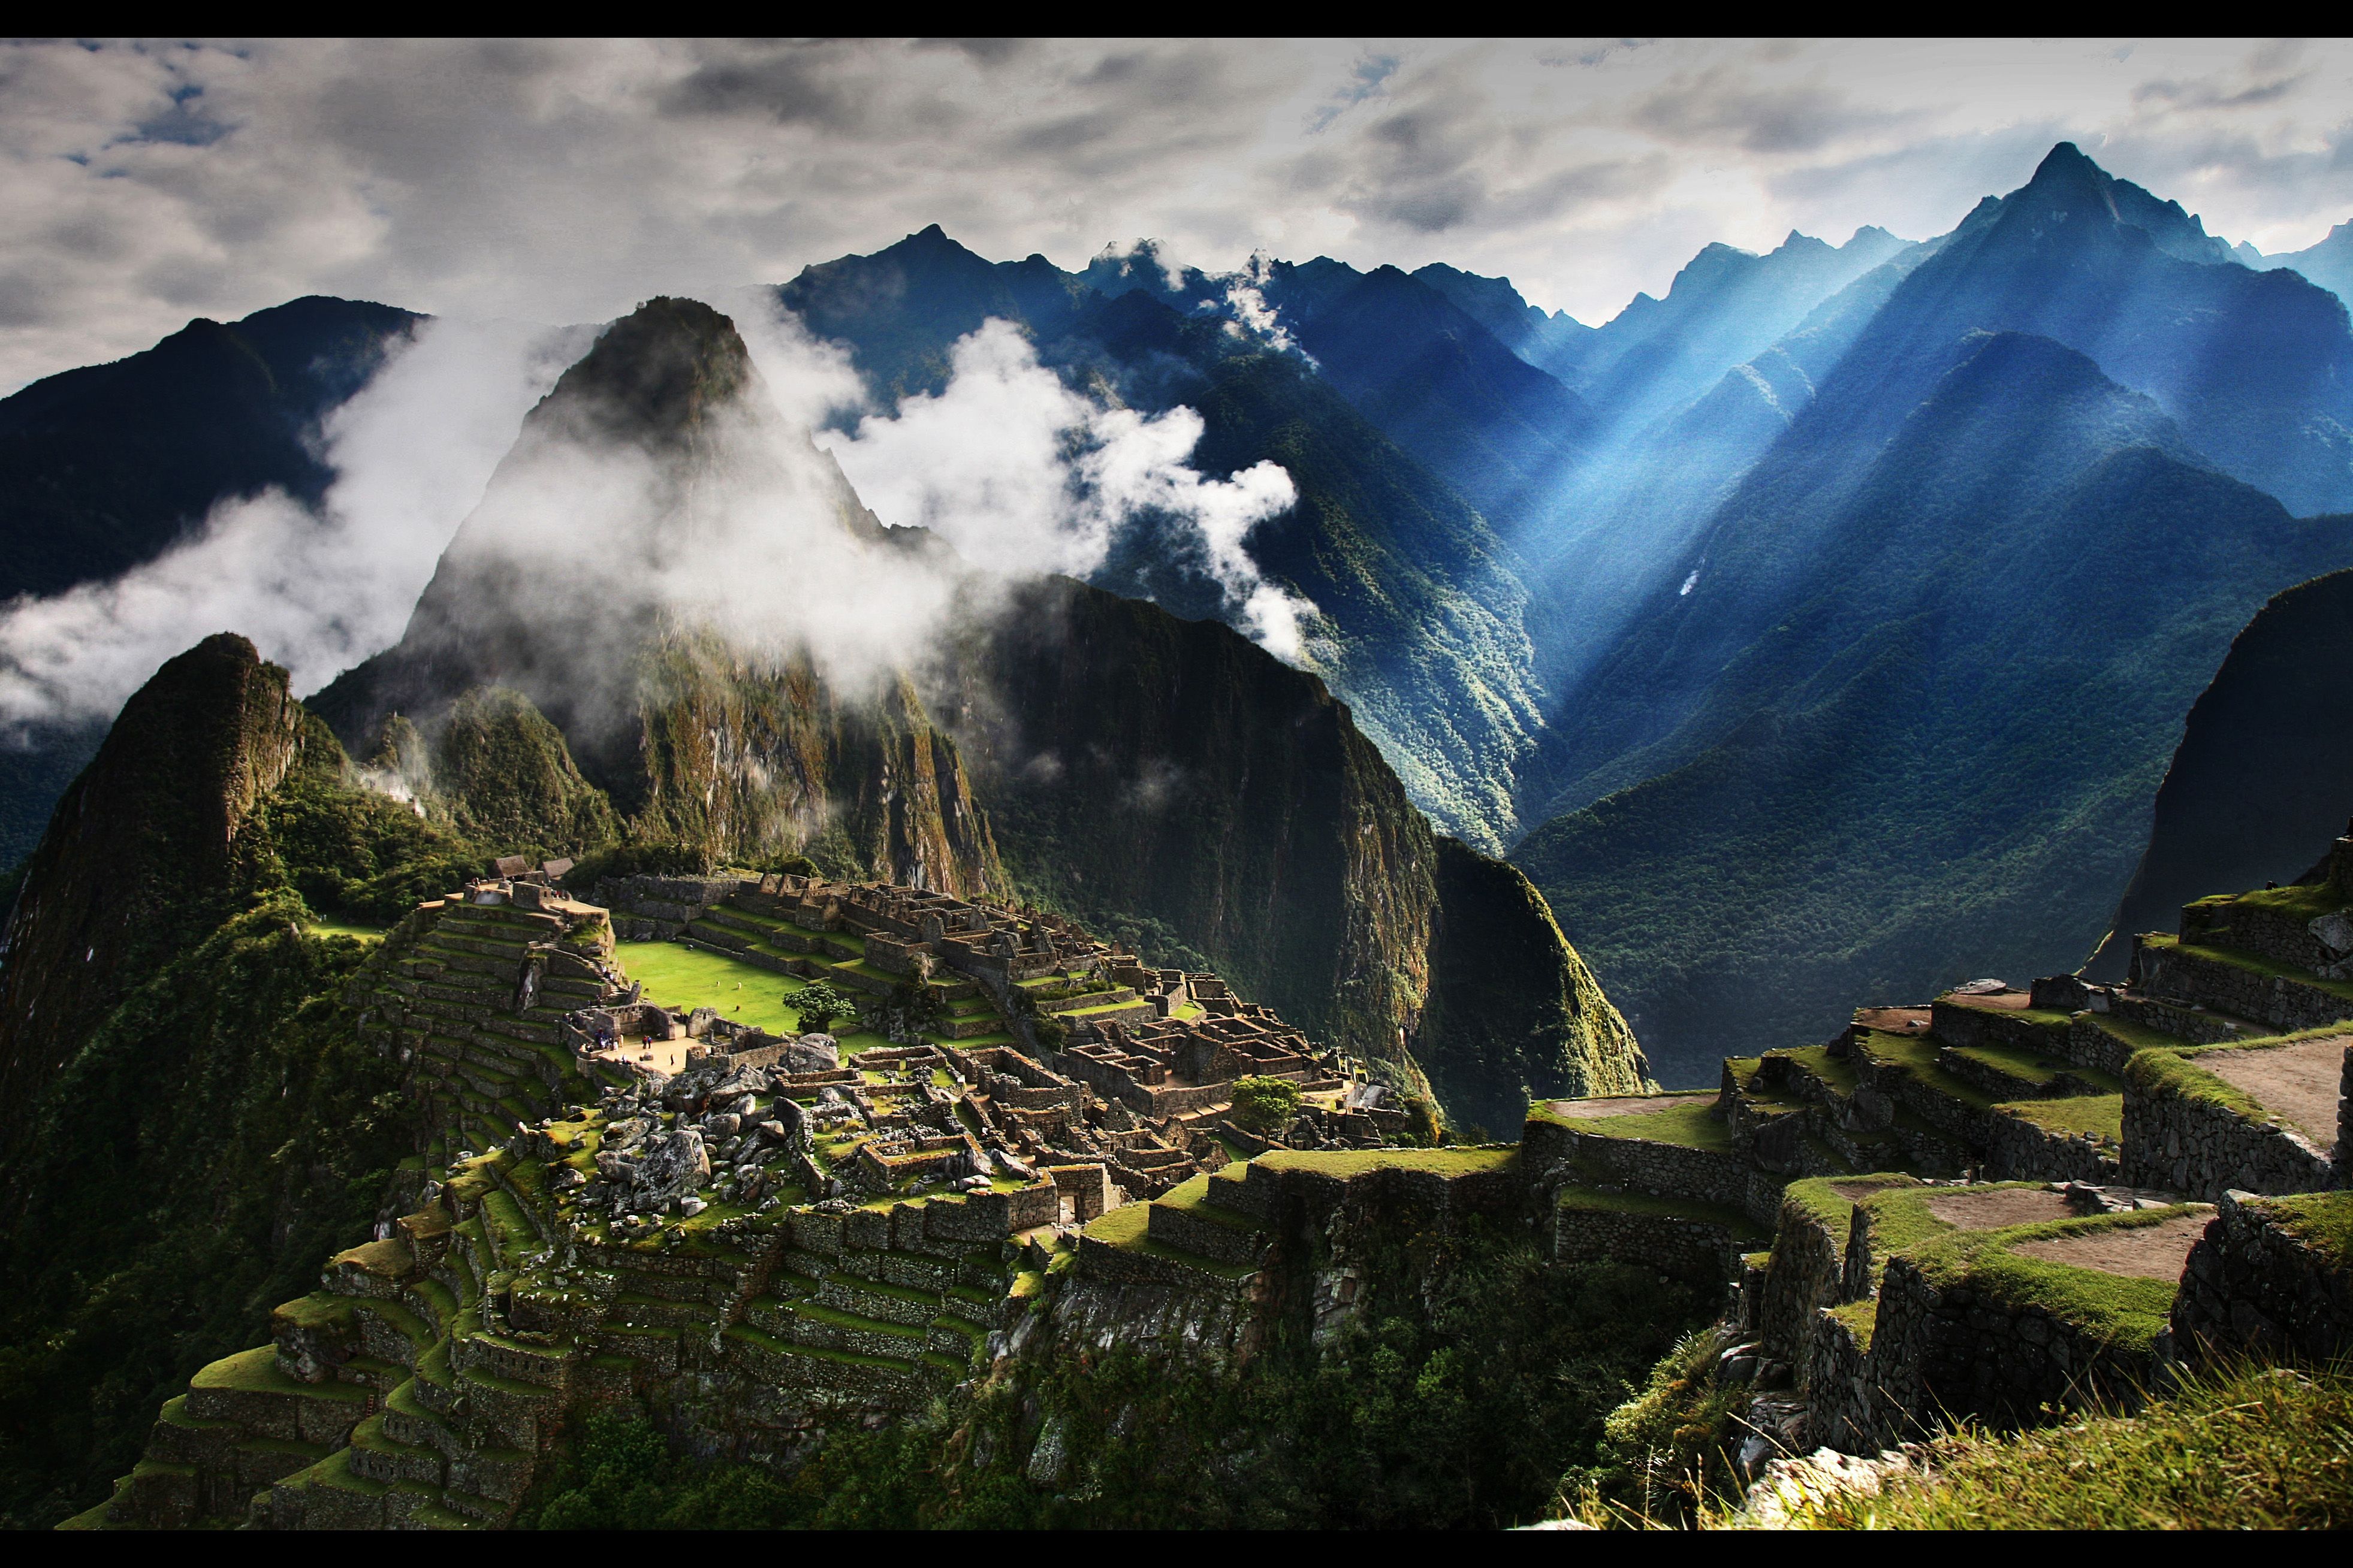 mountains, clouds, landscapes, nature, buildings, Machu Picchu